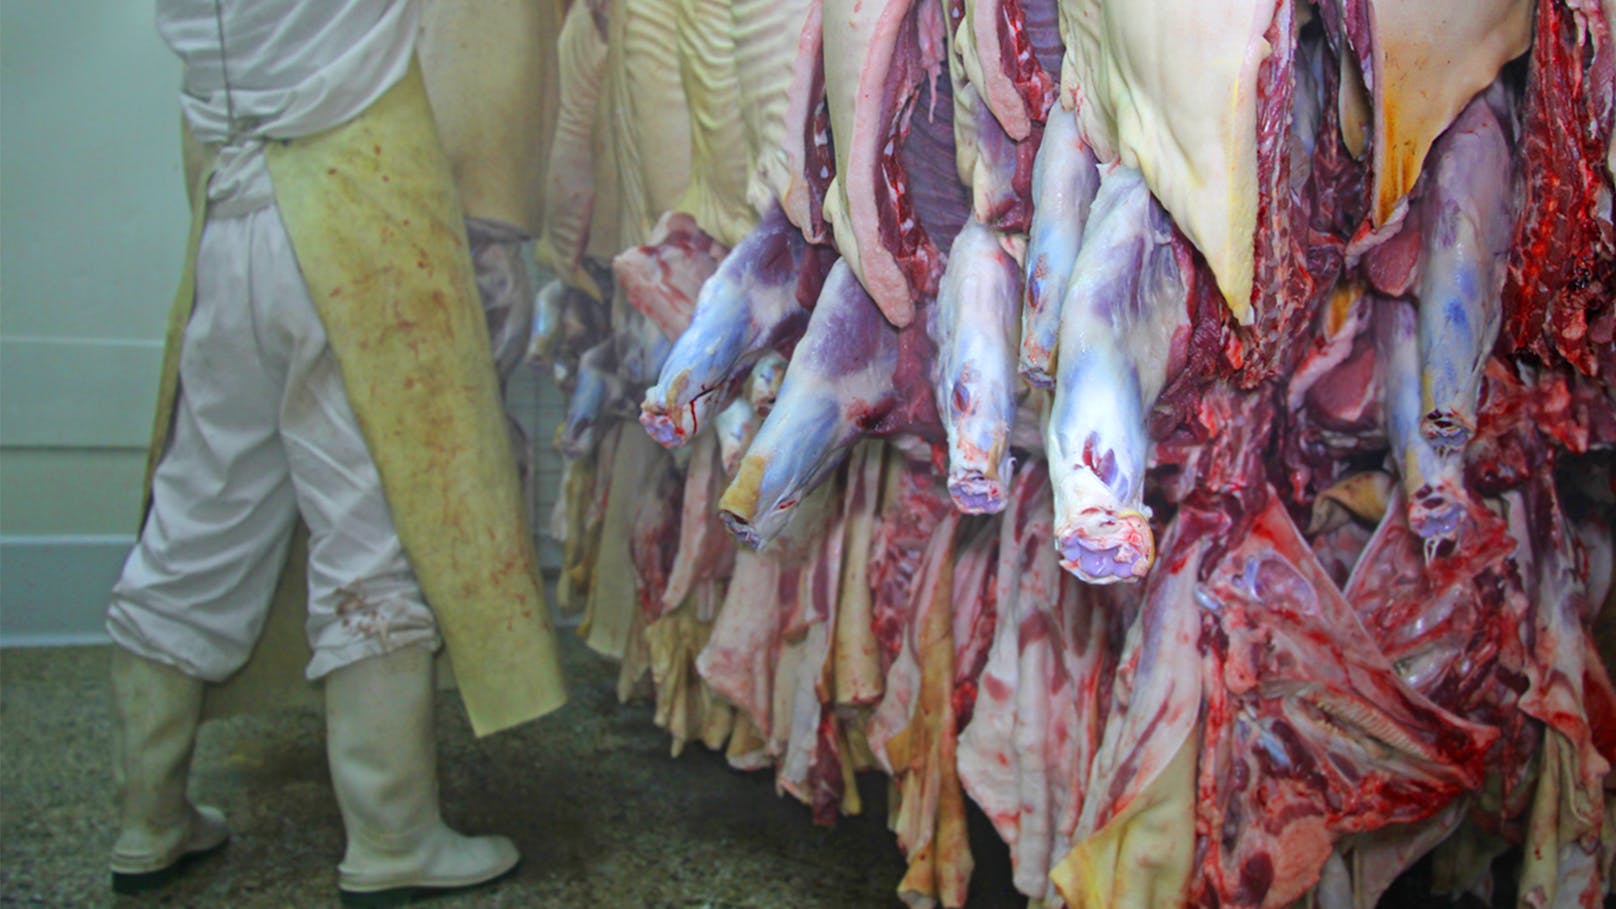 Corona-Hotspot Fleischindustrie! Immer mehr infizierte Schlachthof-Mitarbeiter in Deutschland.